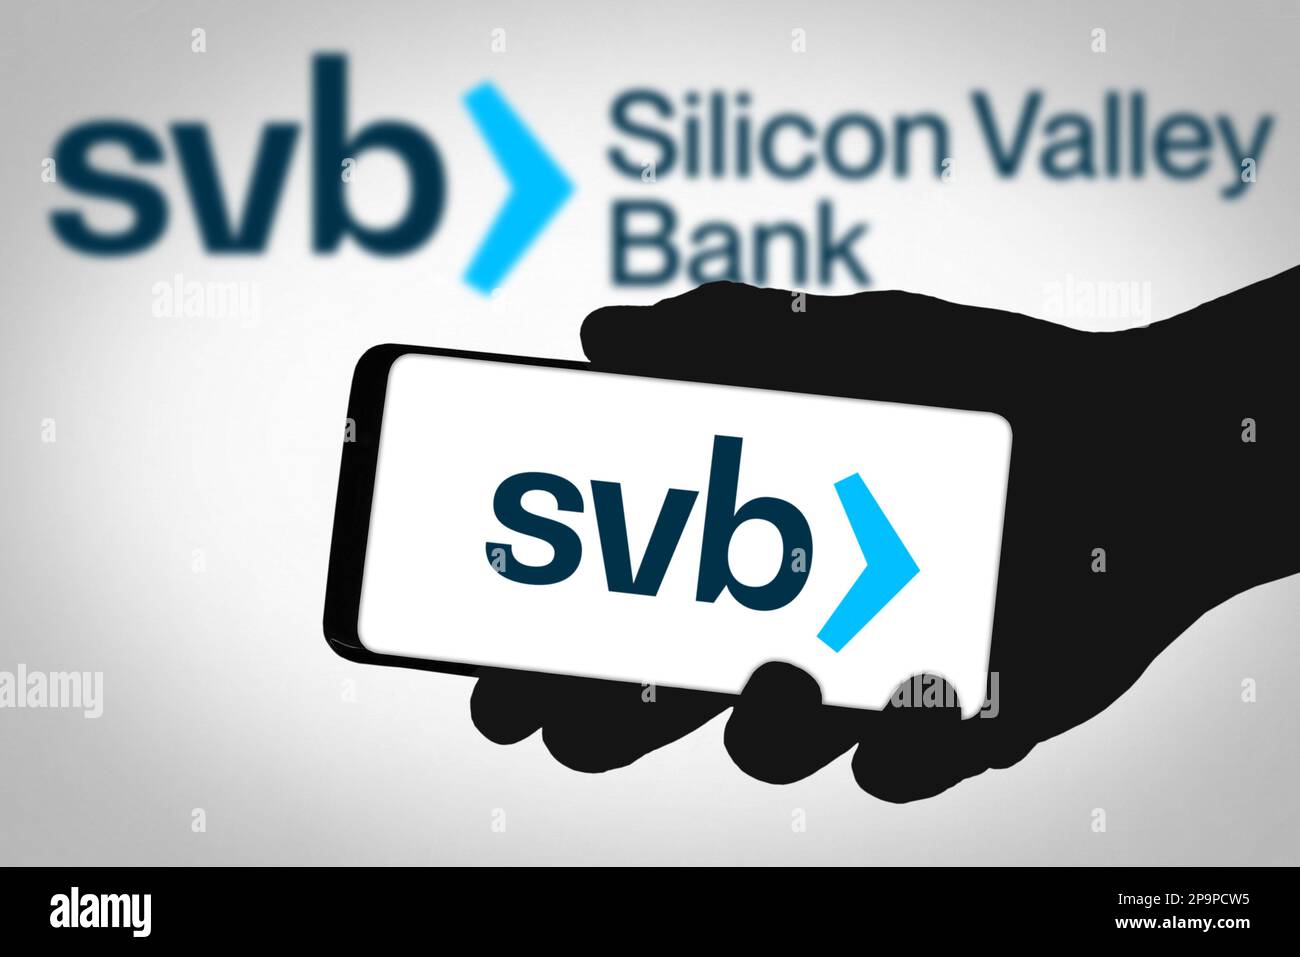 SVB Silicon Valley Bank Stock Photo